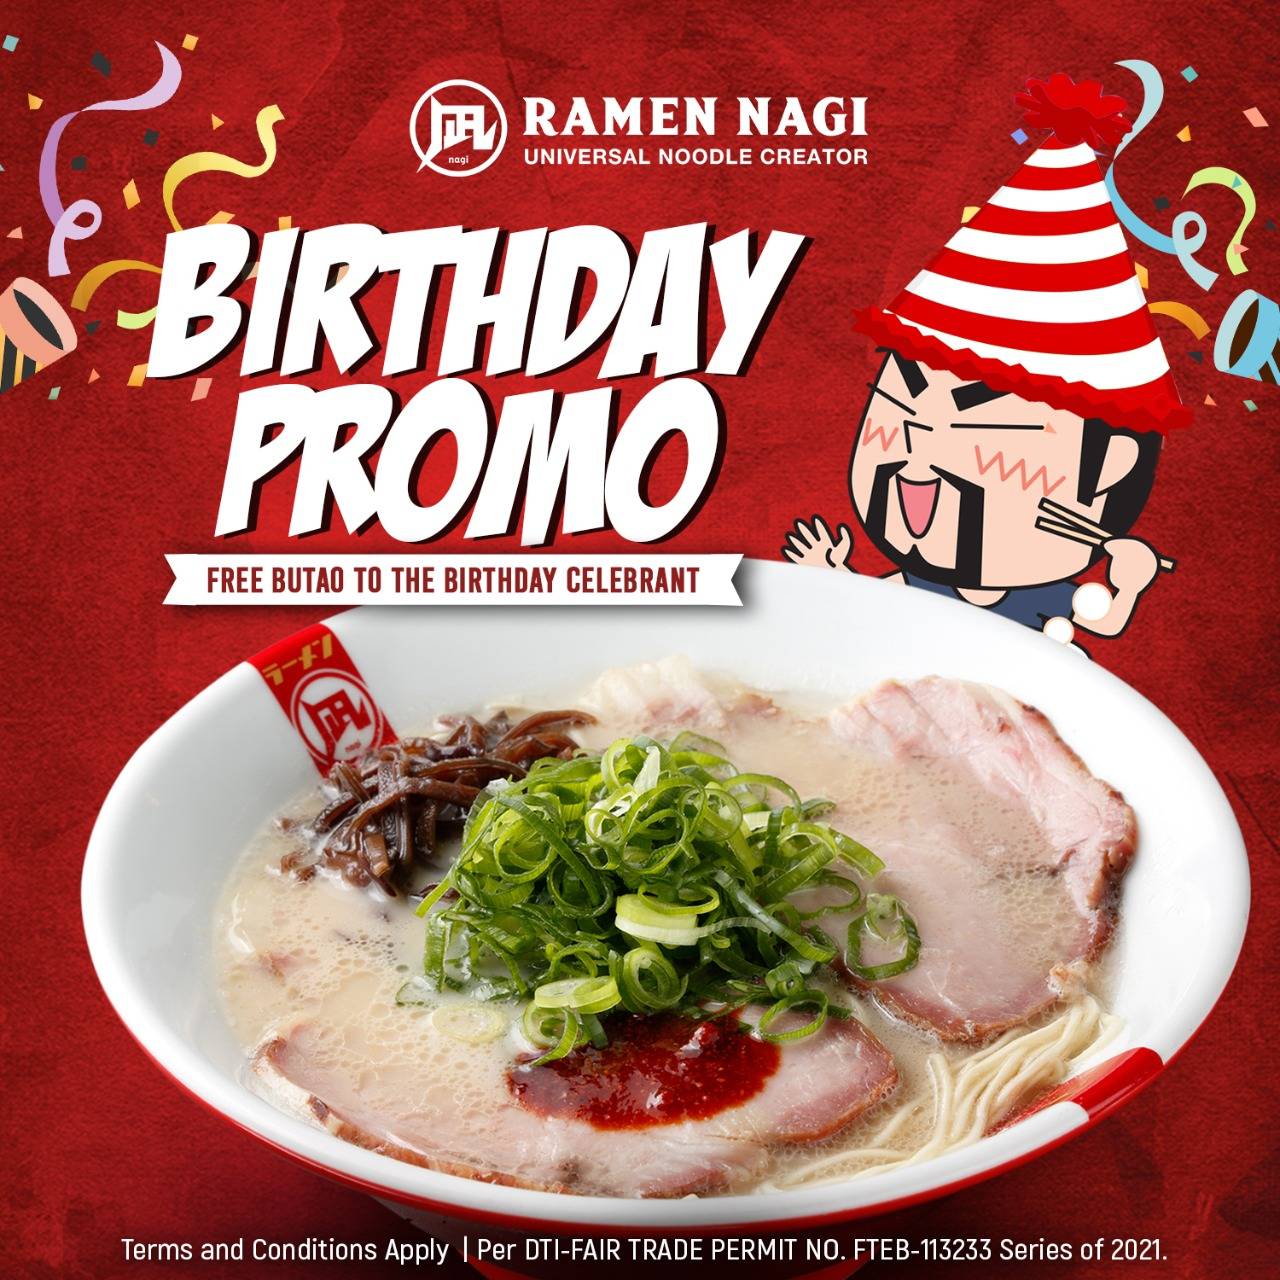 Ramen Nagi Birthday Promo FREE Butao King Ramen Deals Pinoy